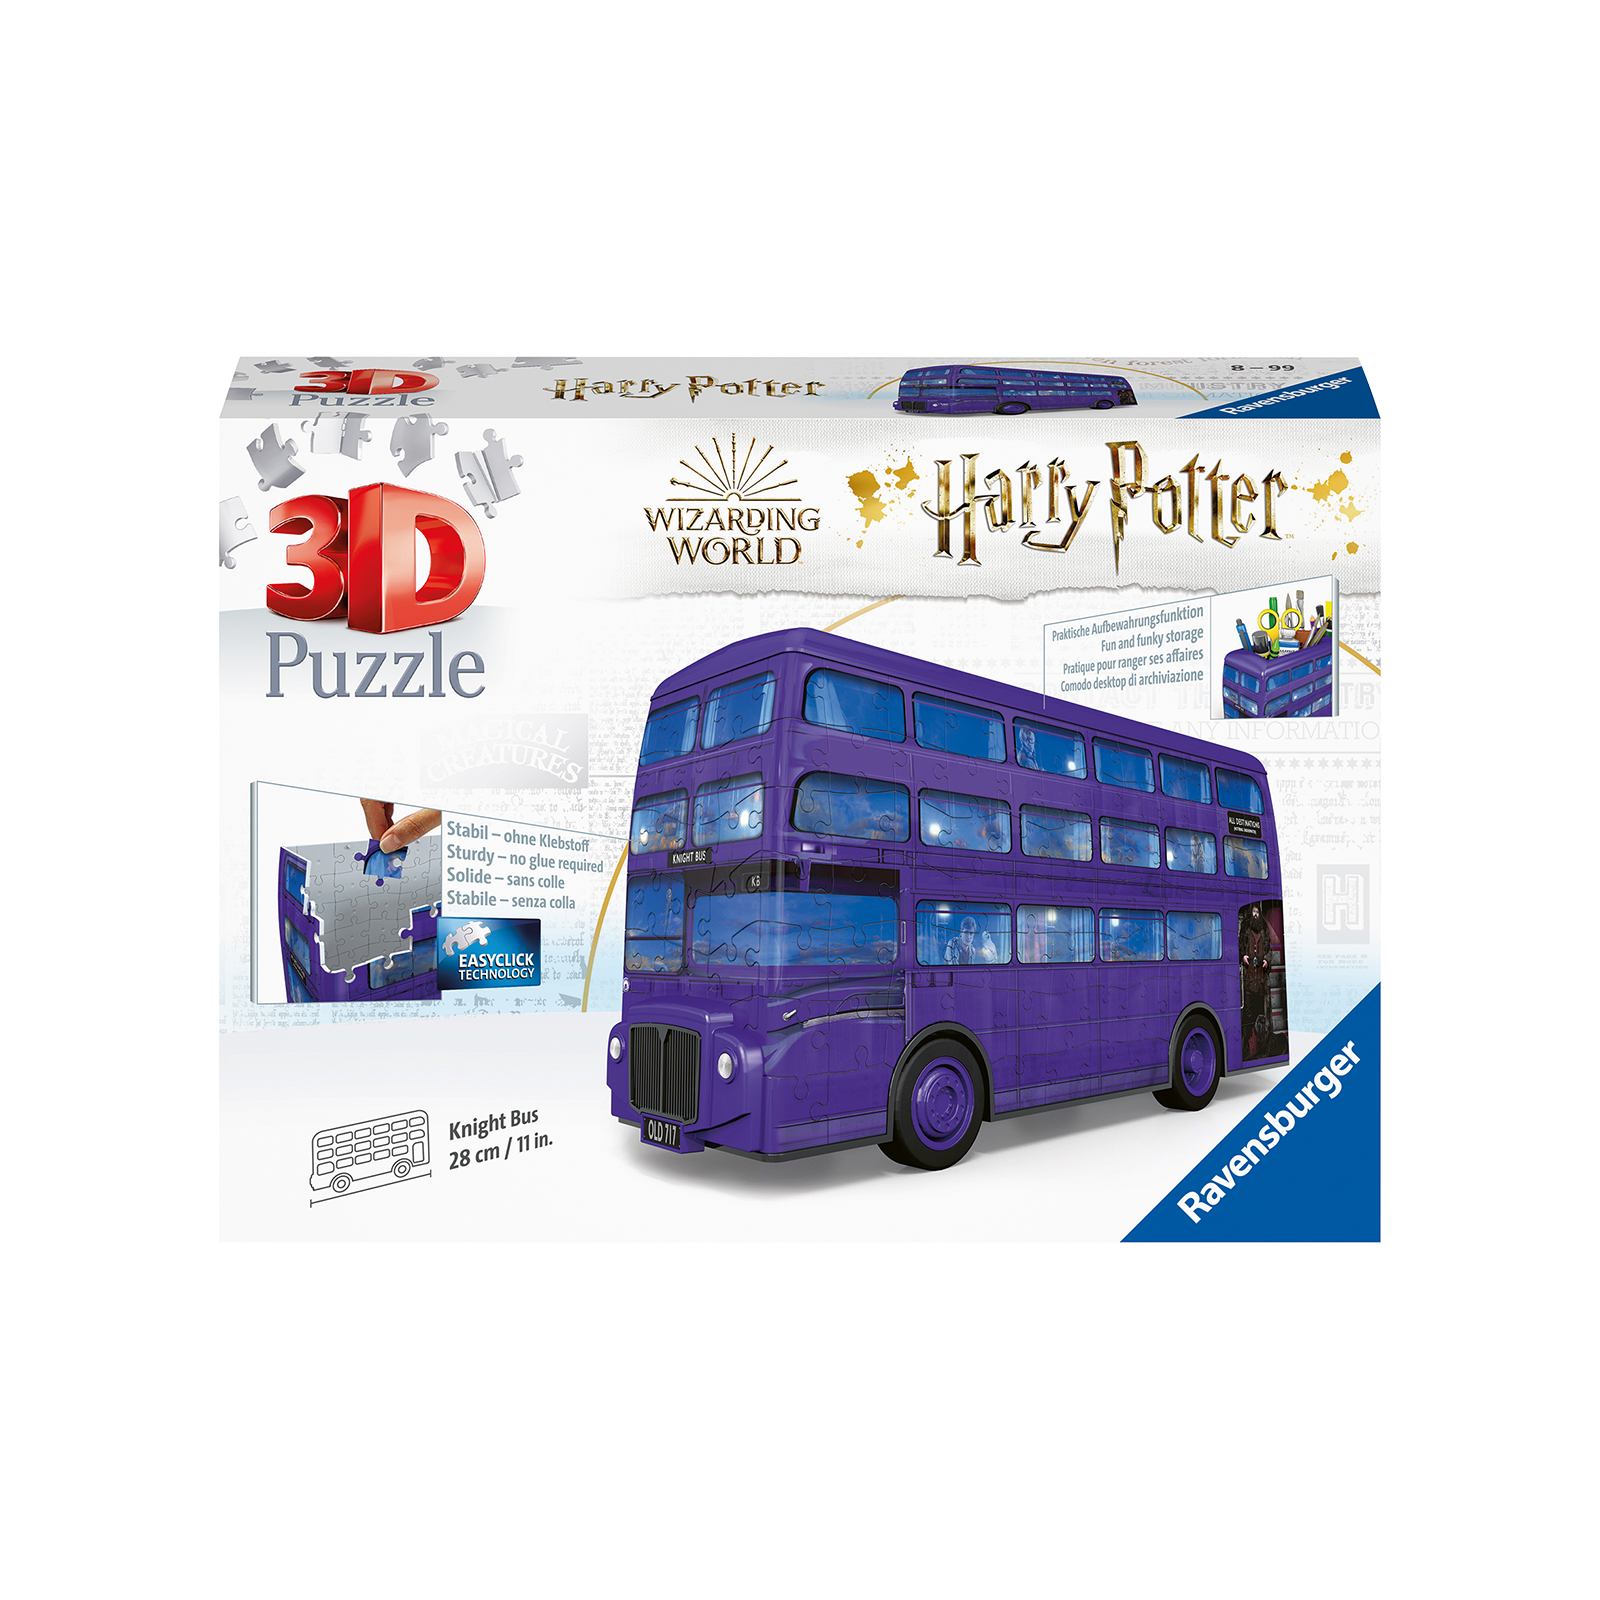 Ravensburger - 3d puzzle nottetempo, bus harry potter, 216 pezzi, 8+ anni - Harry Potter, RAVENSBURGER, RAVENSBURGER 3D PUZZLE